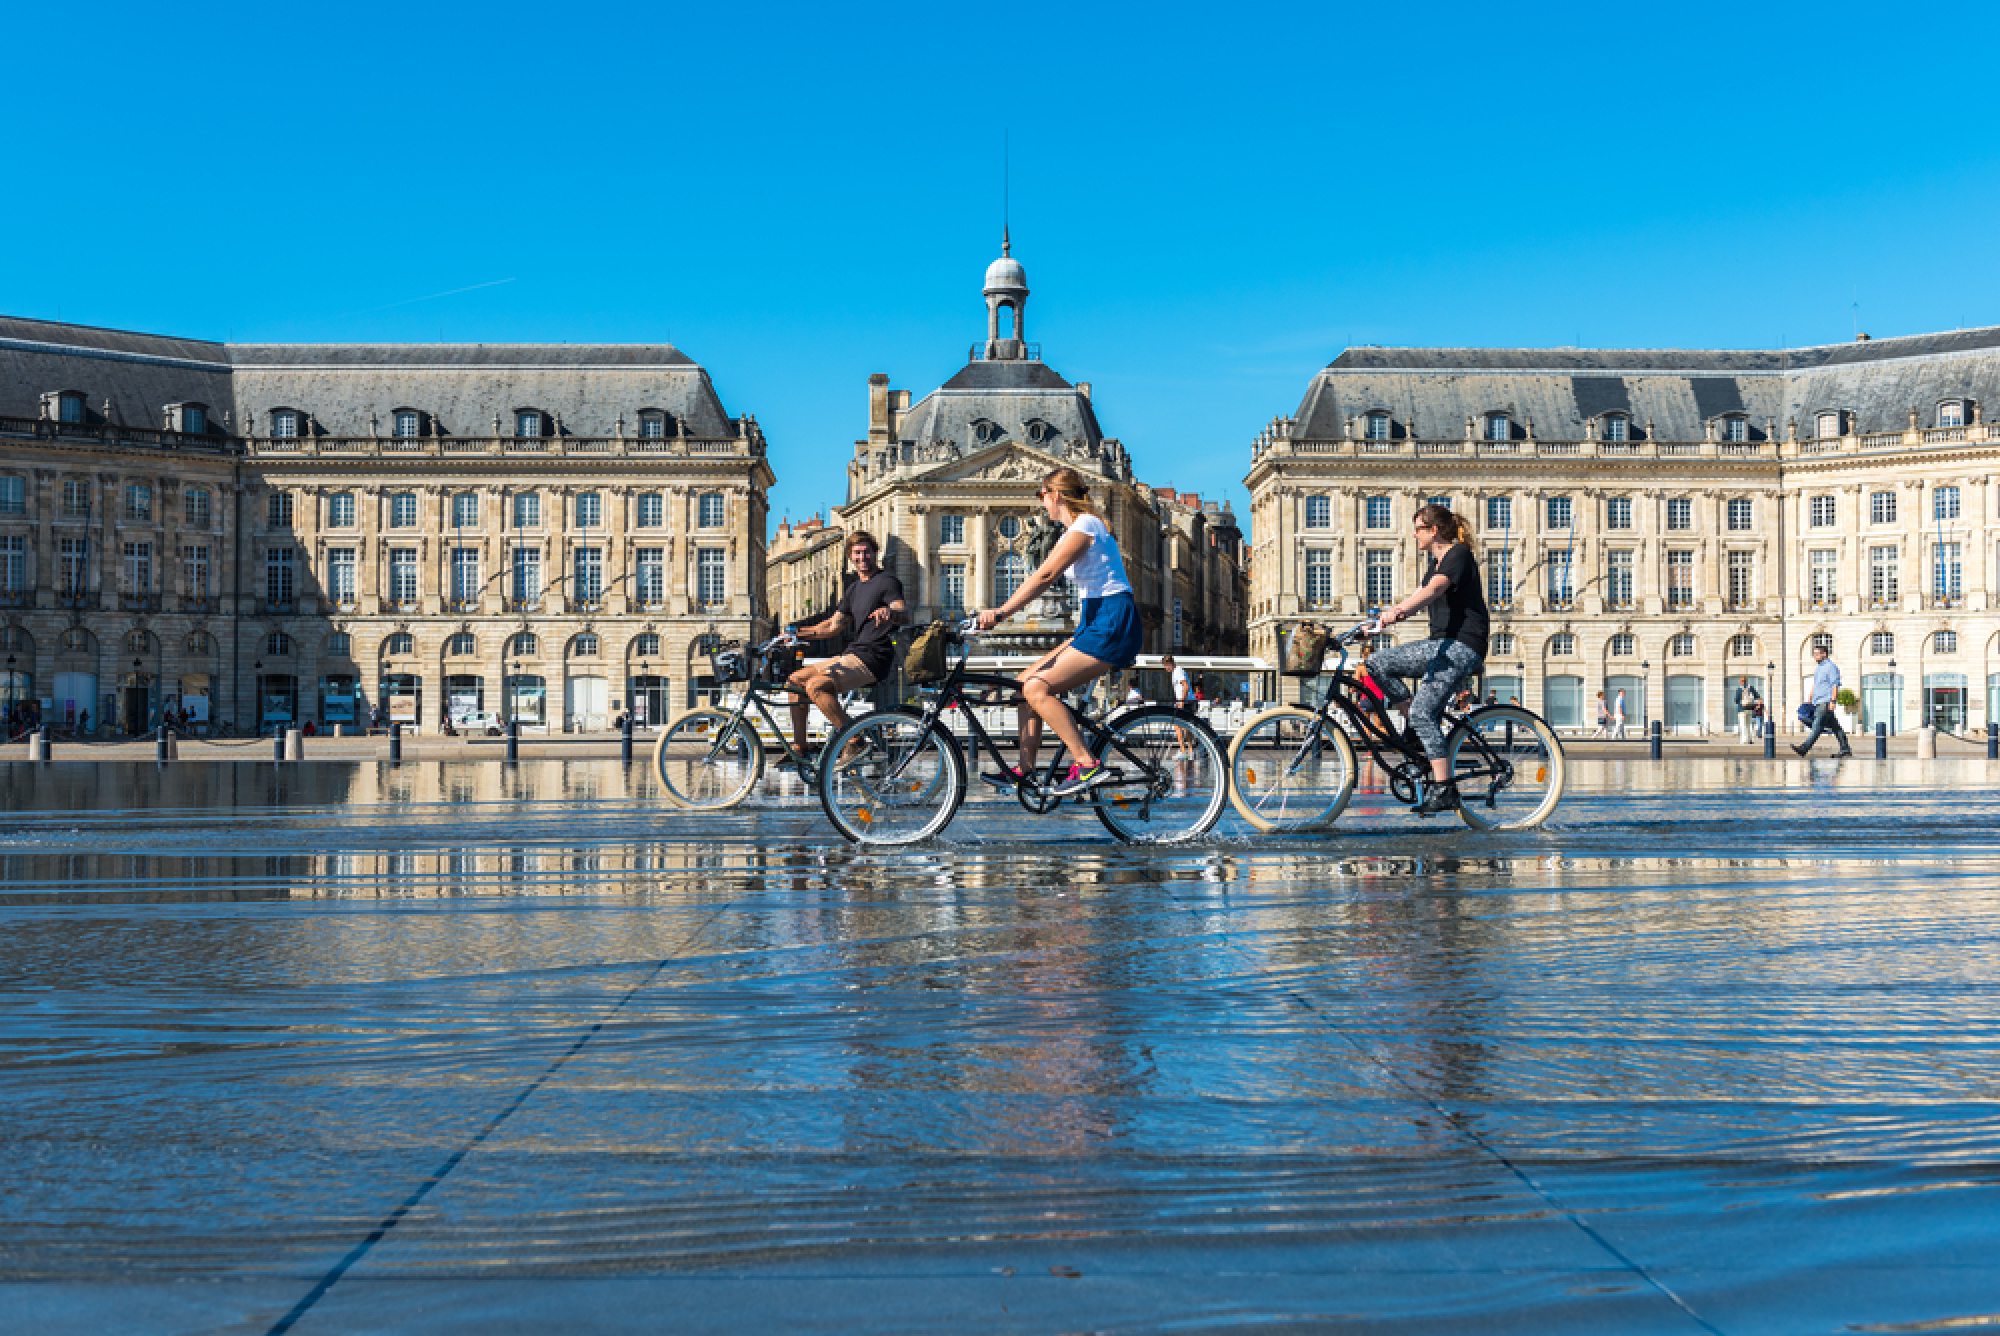 Des cyclistes sur la place de la bourse à Bordeaux